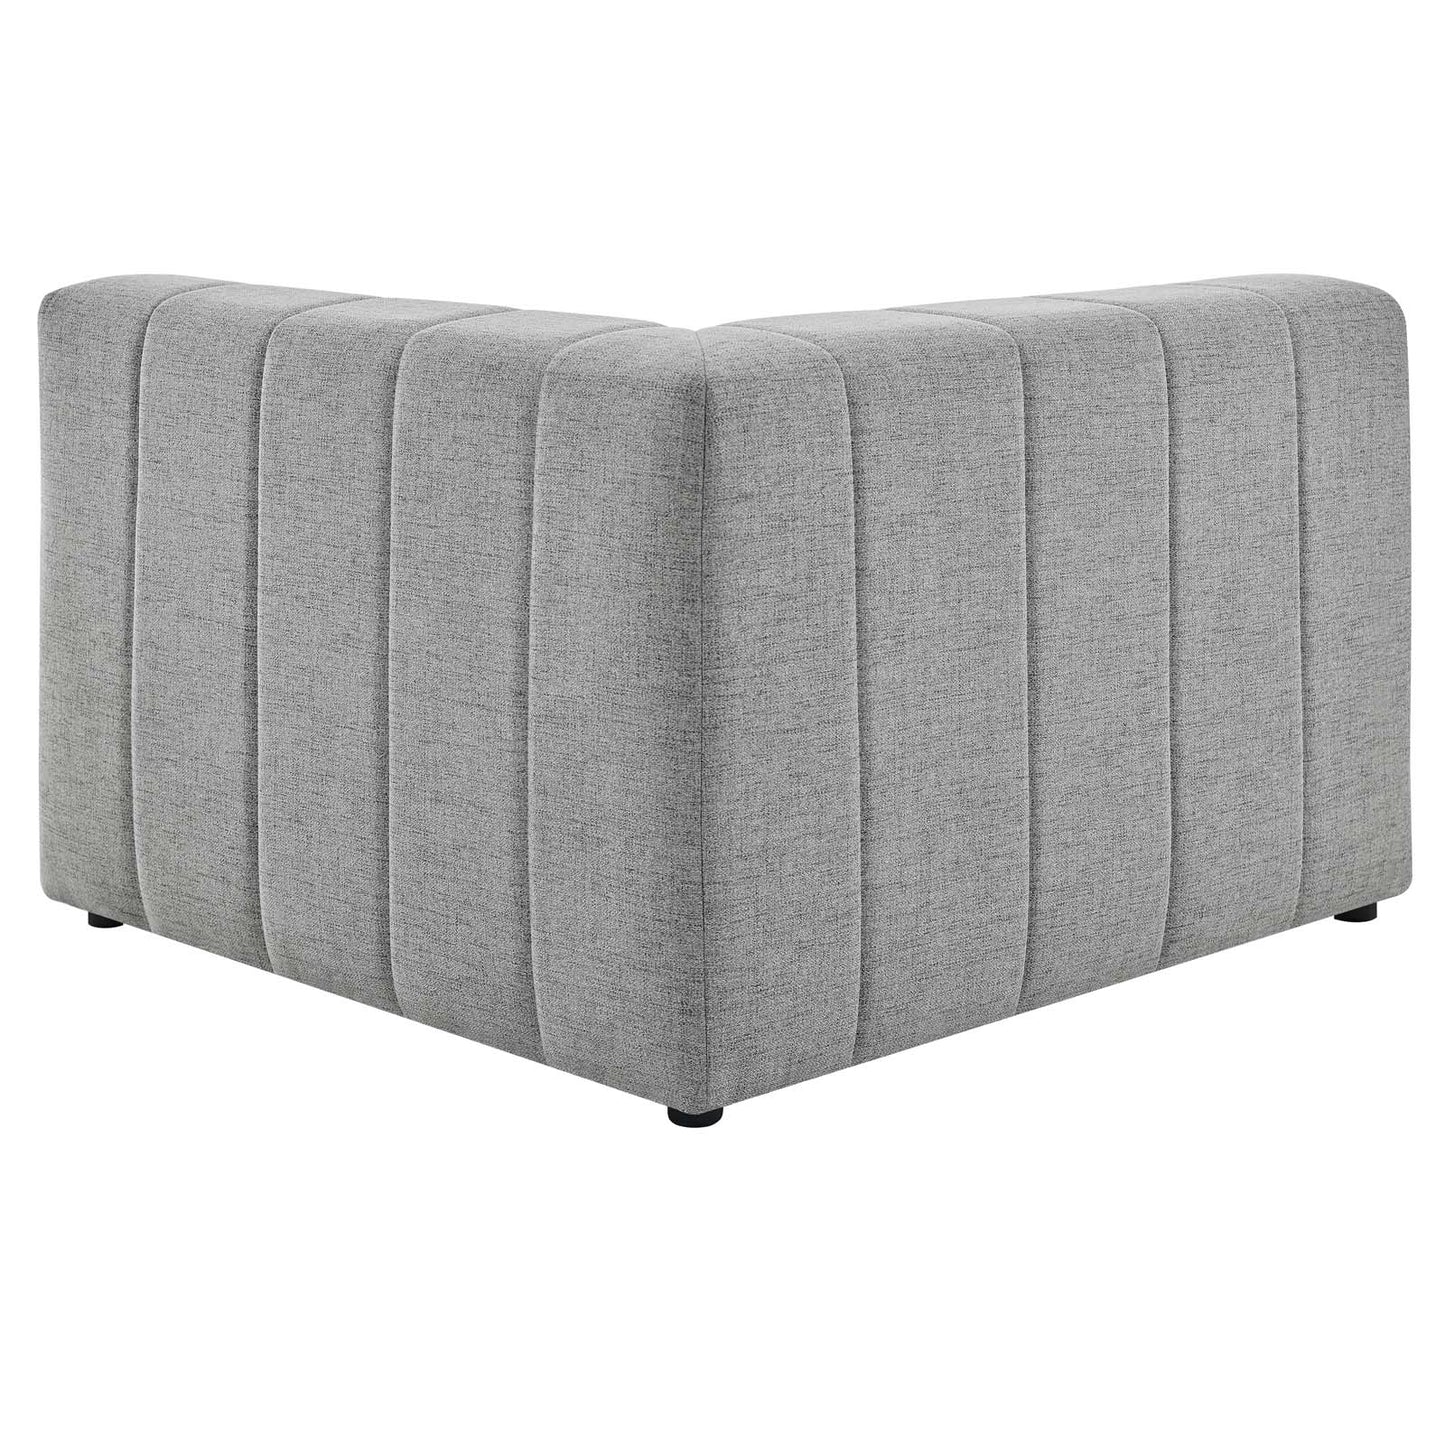 Bartlett Upholstered Fabric 8-Piece Sectional Sofa Light Gray EEI-4535-LGR